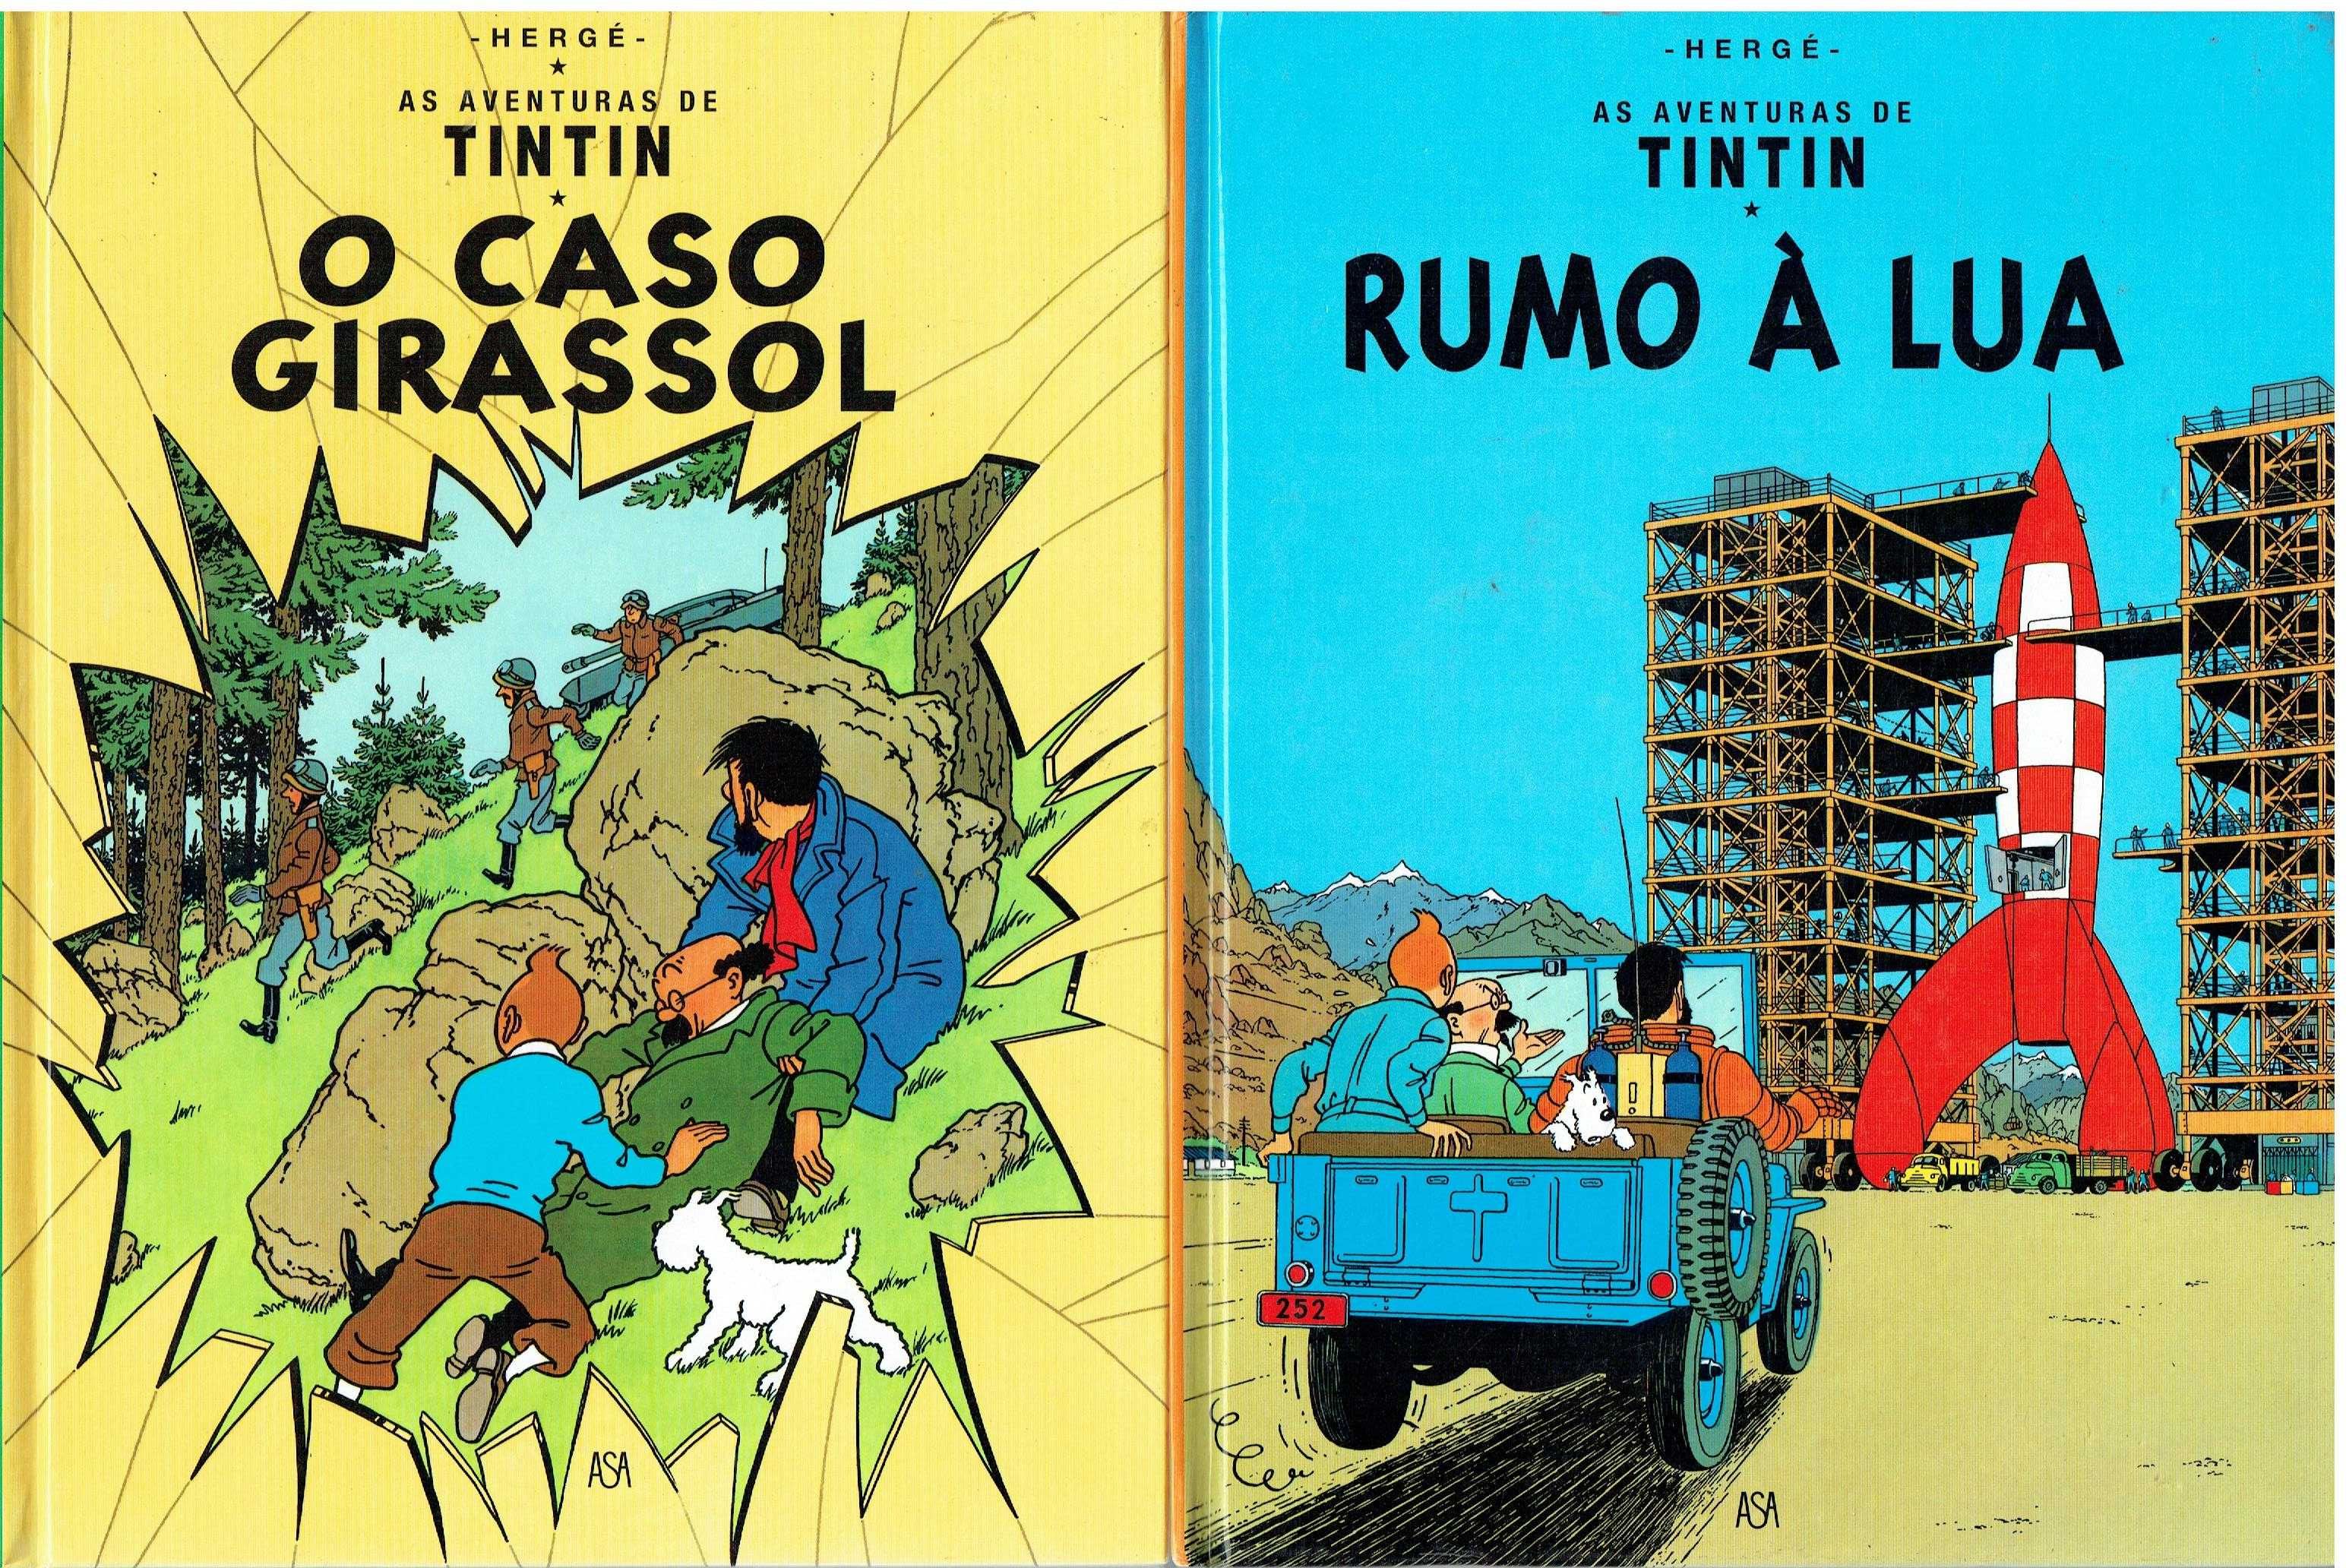 11860

Coleção As Aventuras de Tintim - ASA
de Hergé